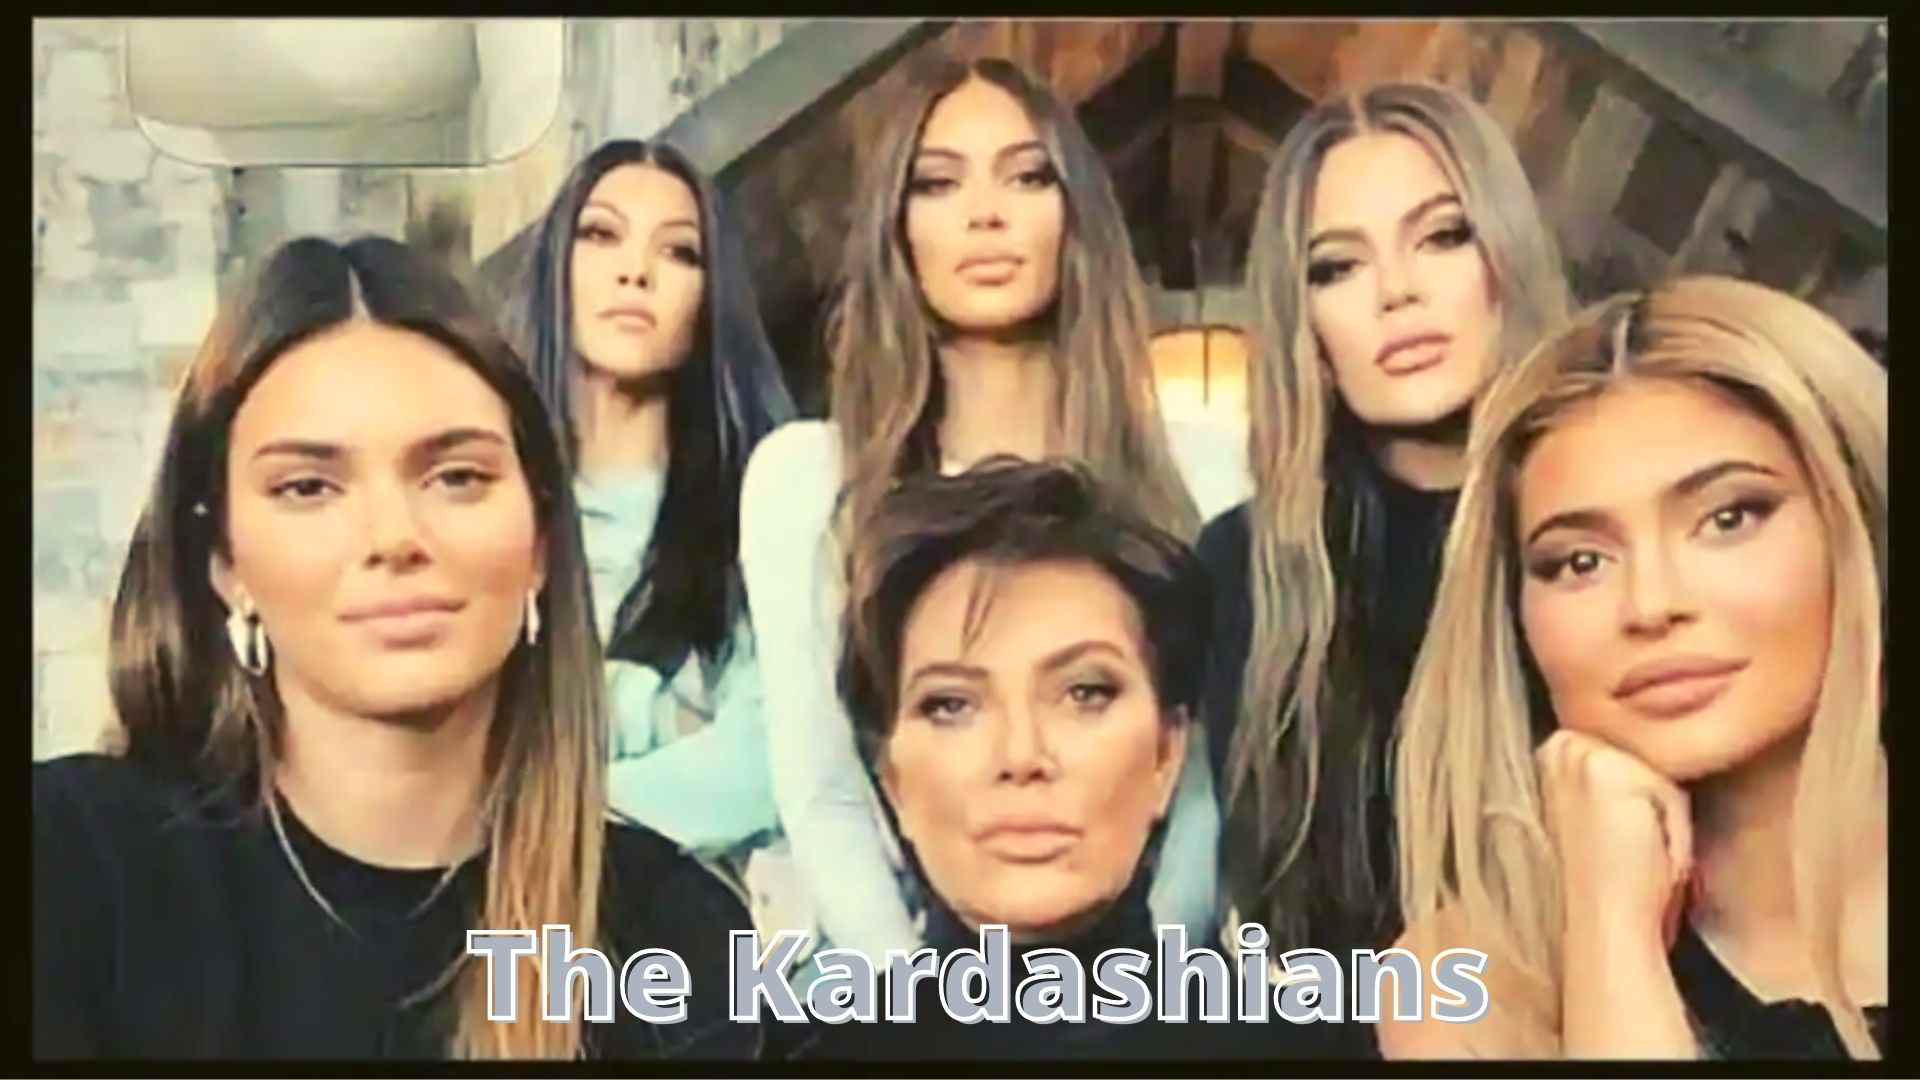 The Kardashians start on Hulu